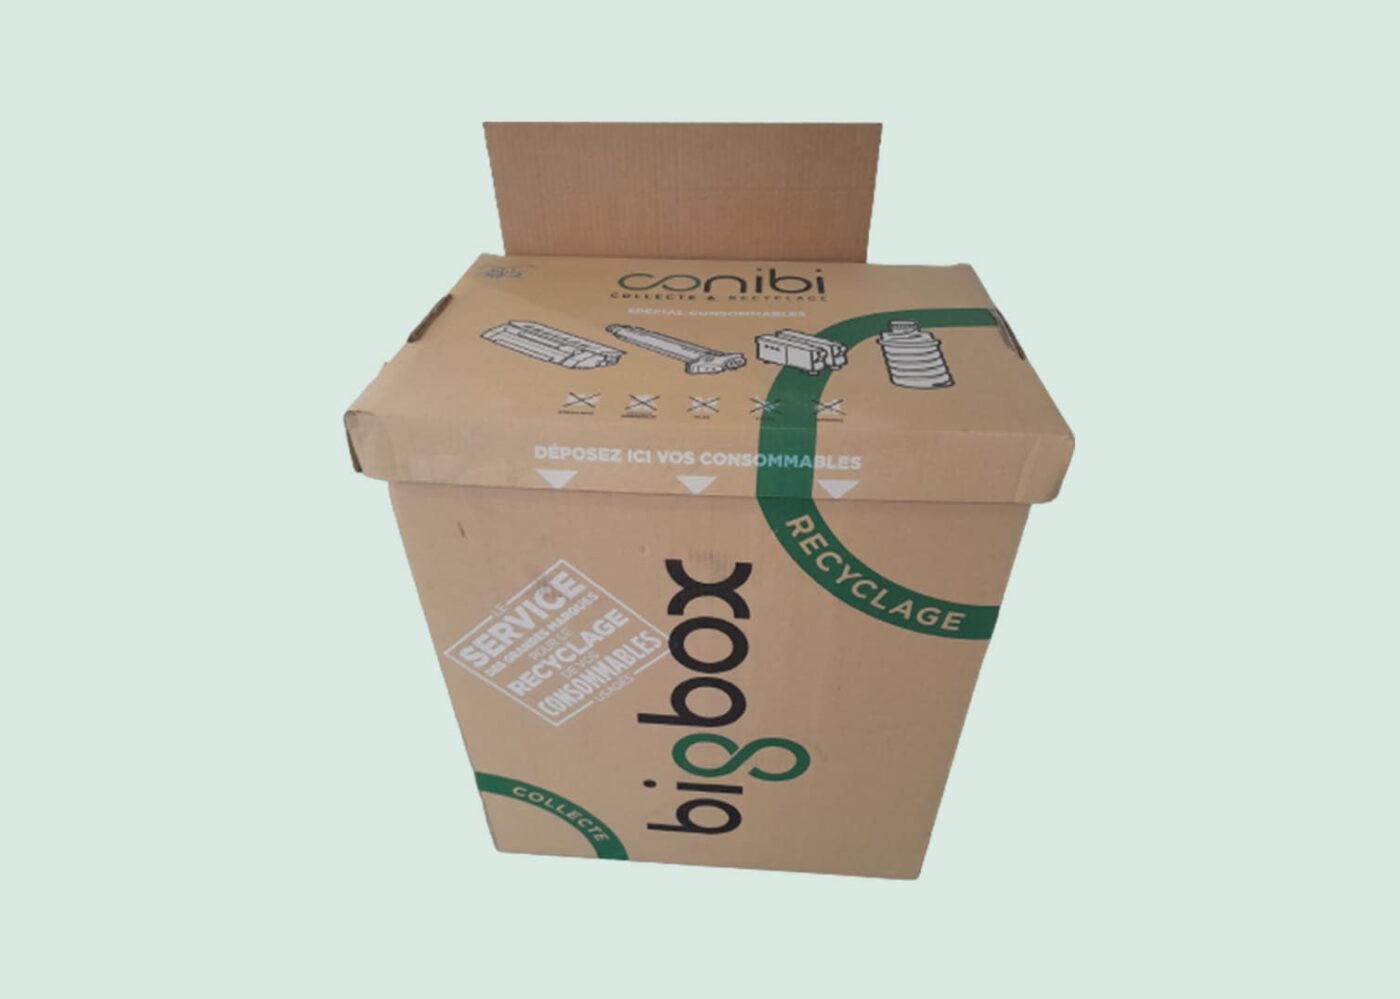 carton de recyclage de consommables conibi